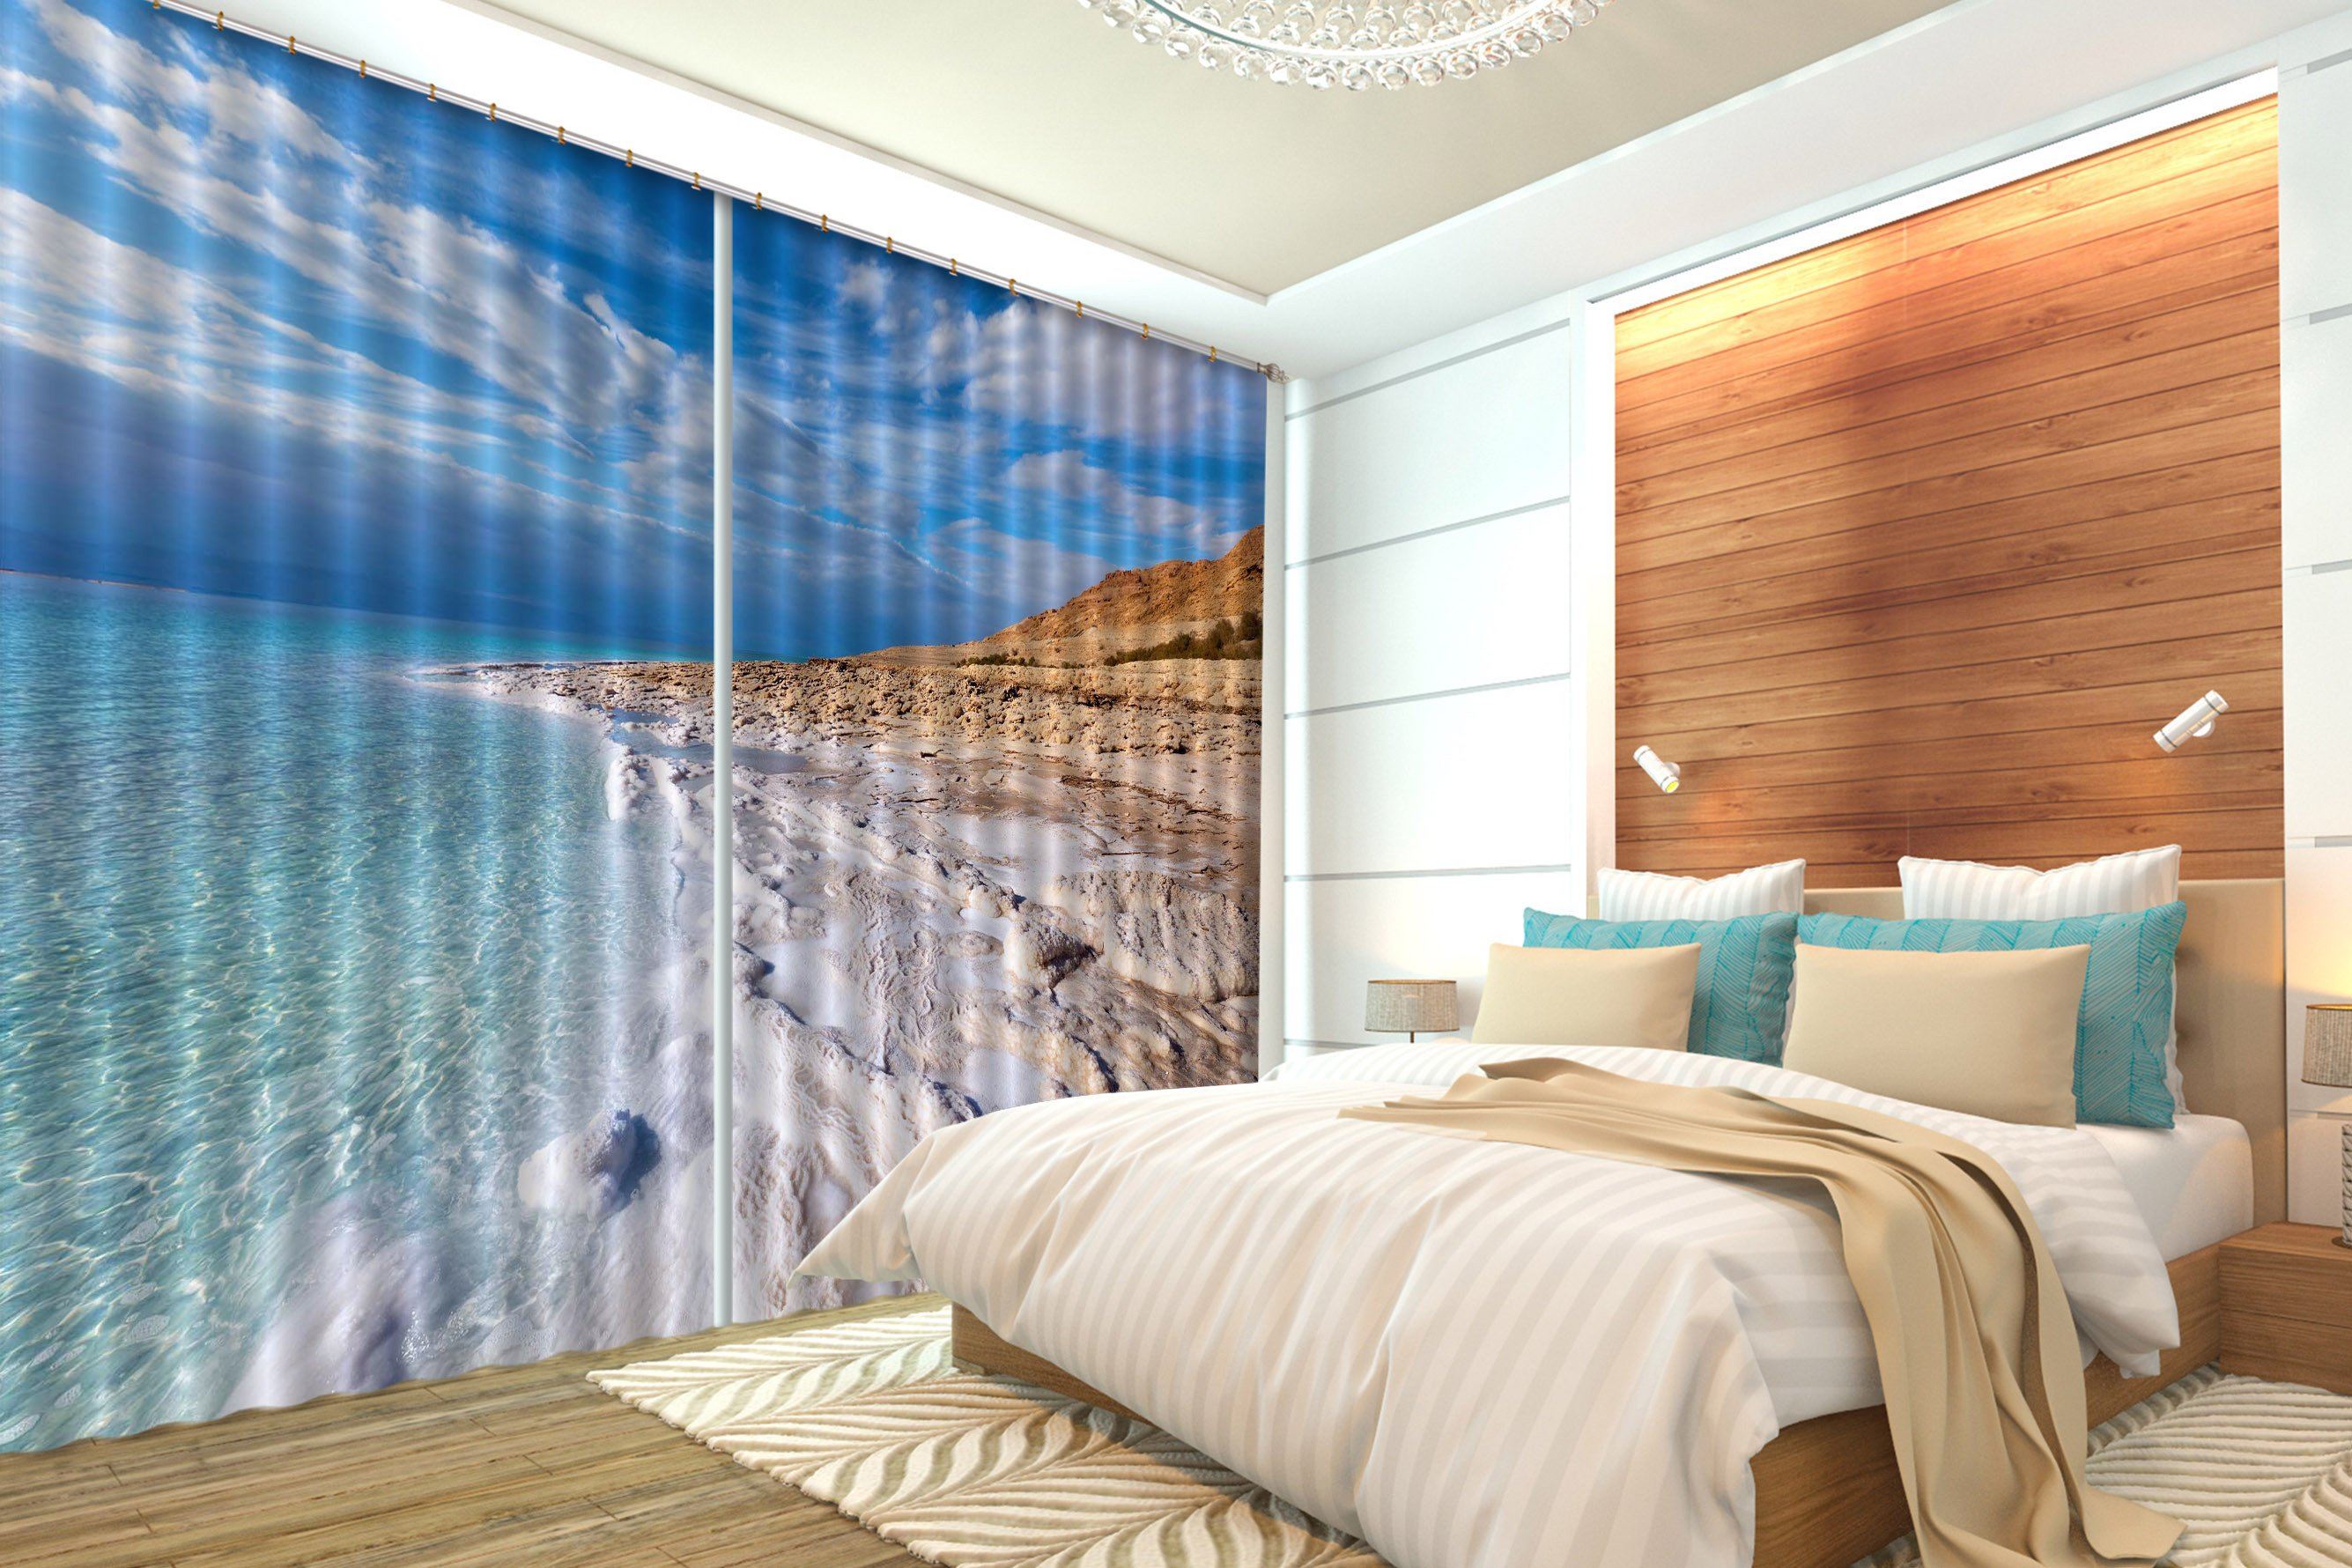 3D Peaceful Beach 108 Curtains Drapes Wallpaper AJ Wallpaper 